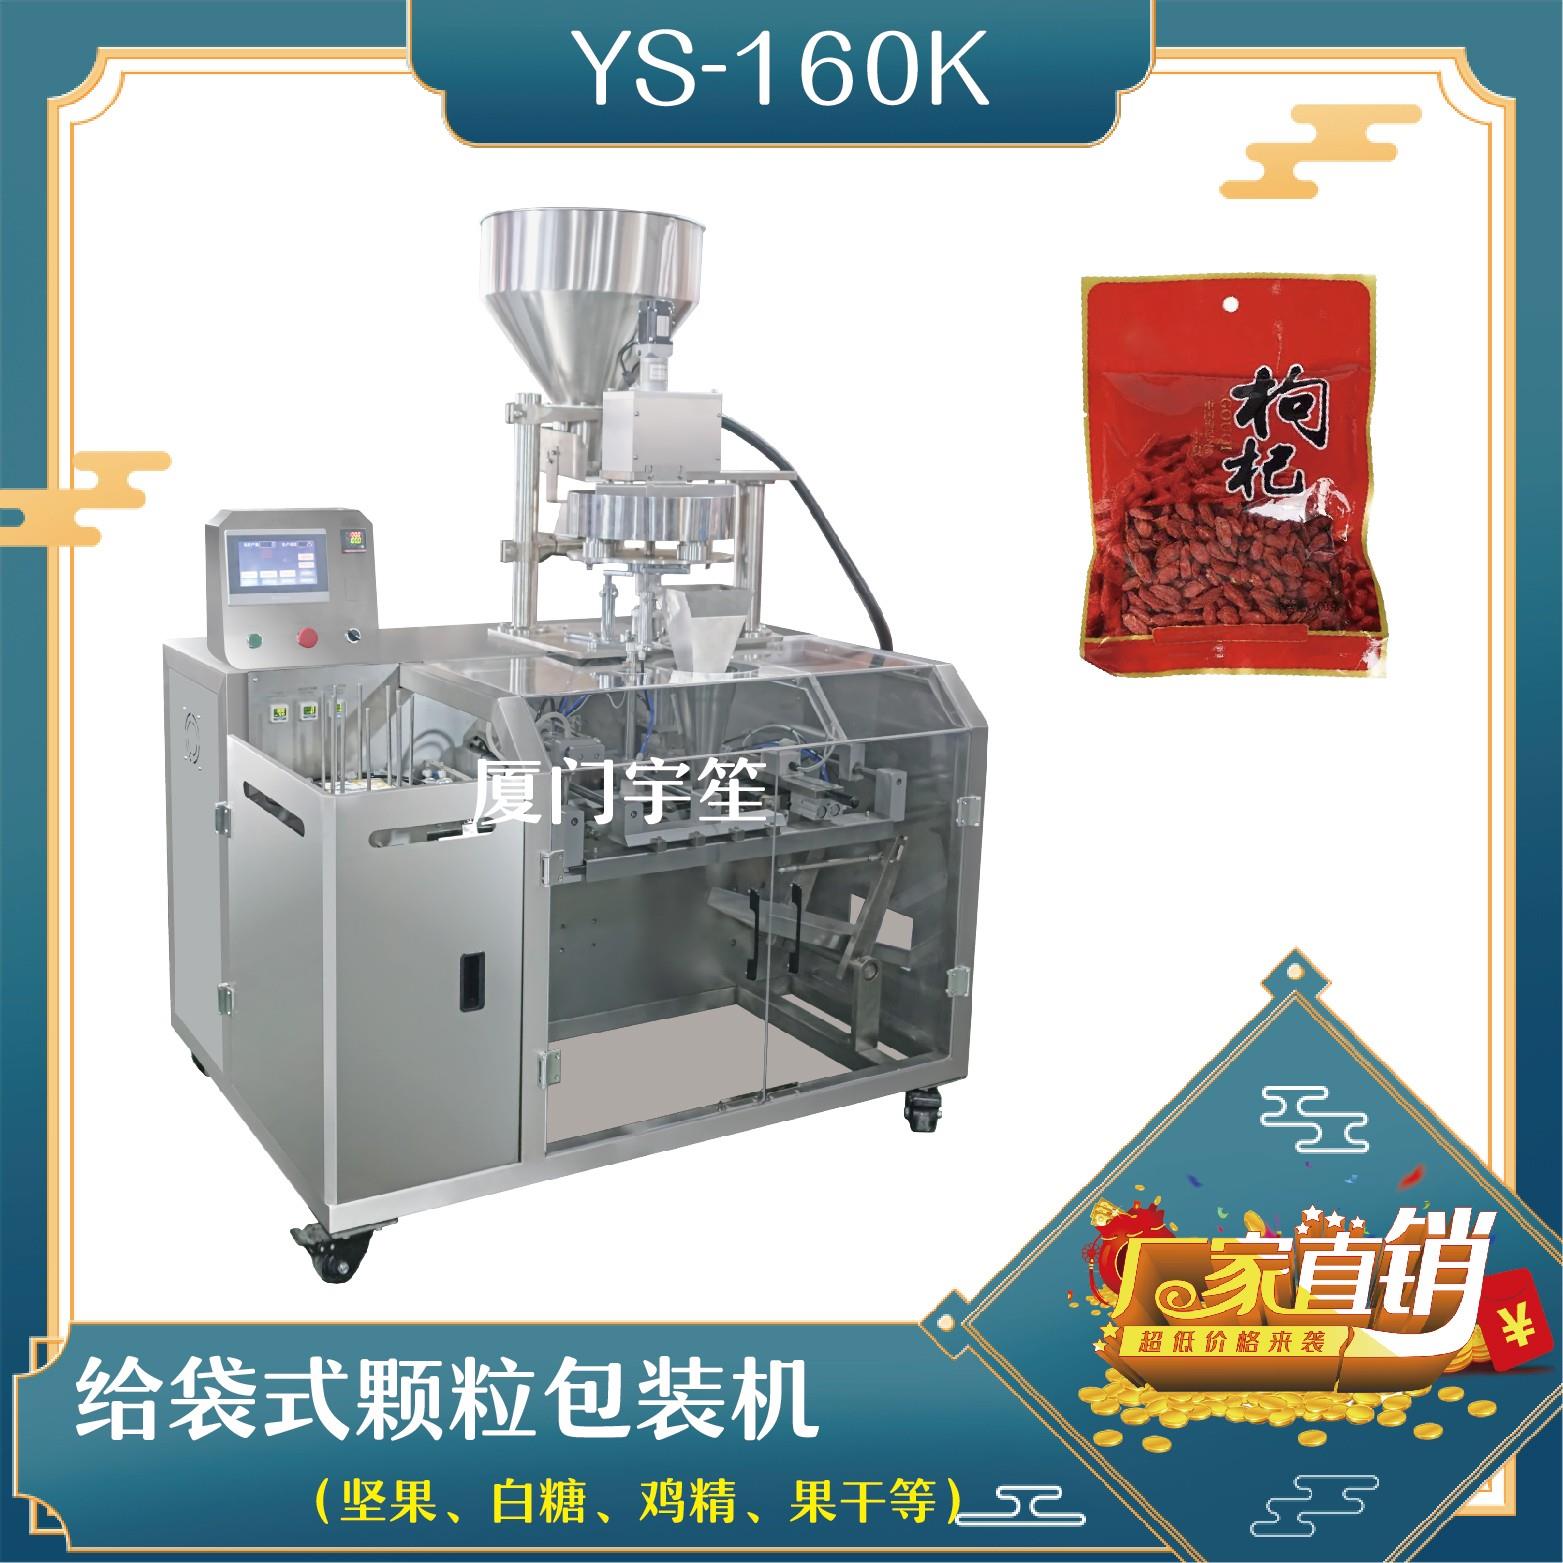 YS-SP160K 給袋式顆粒包裝機